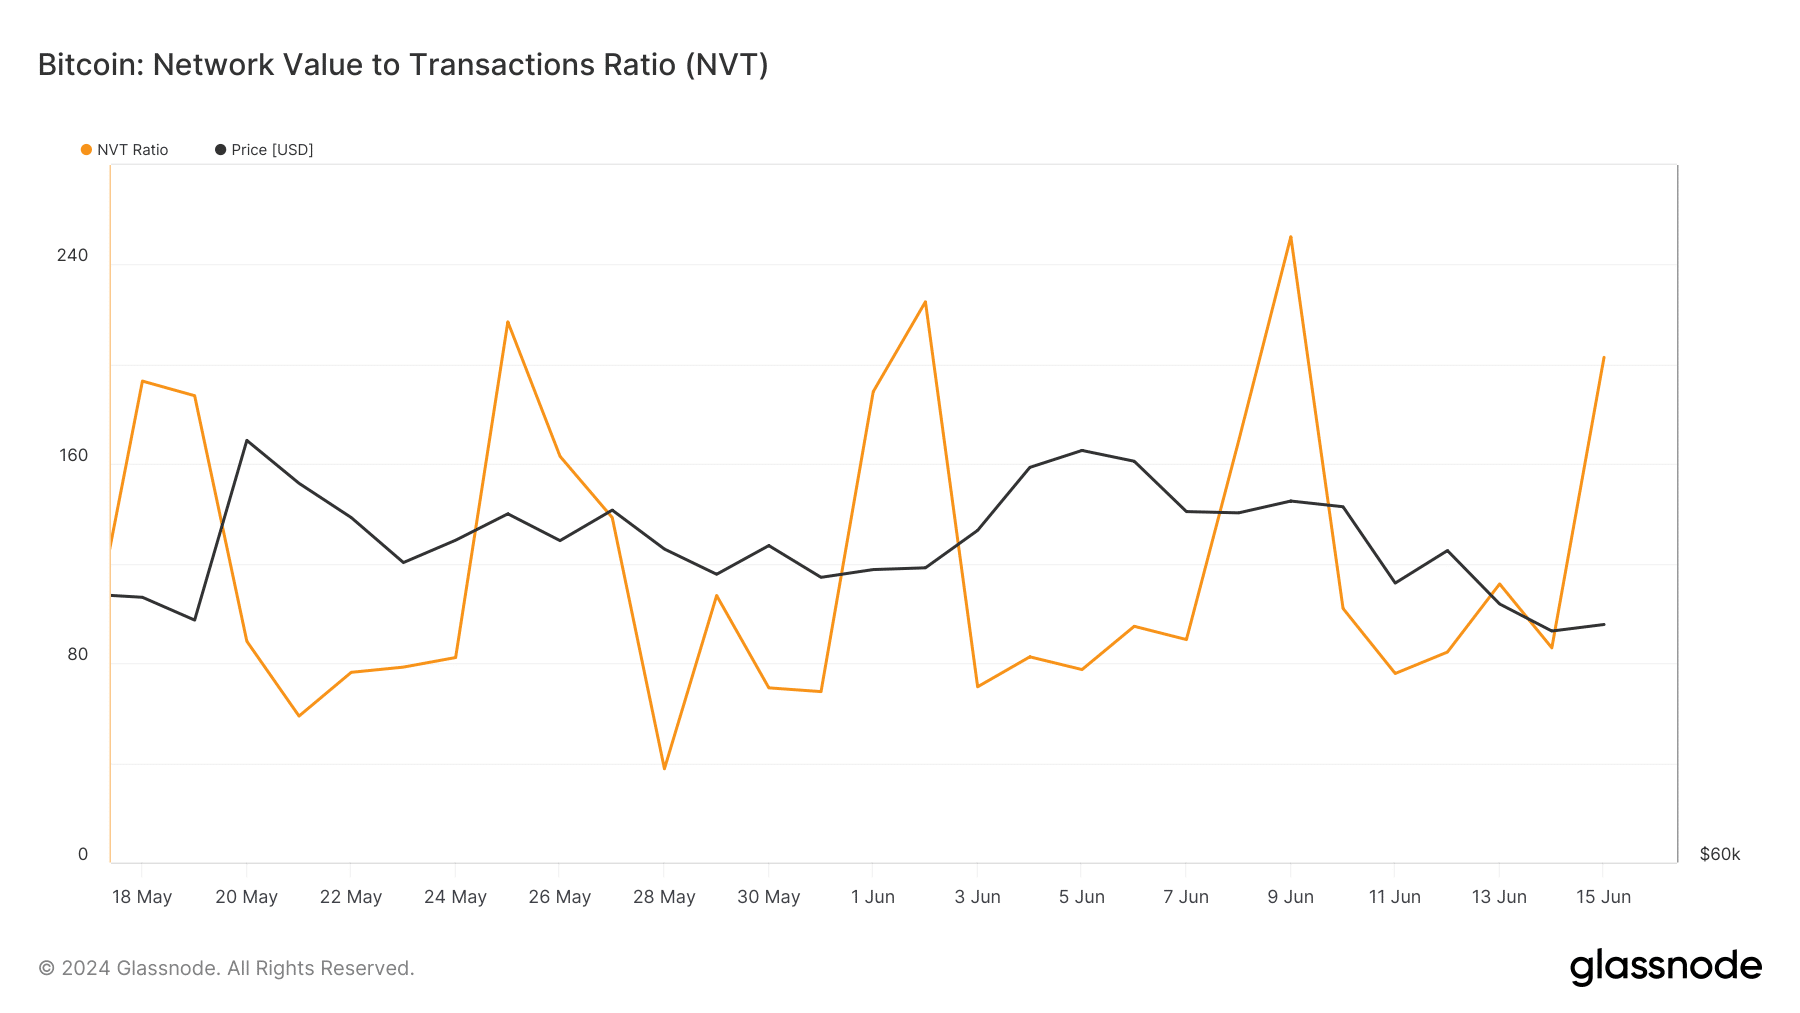 De NVT-ratio voor BTC is gestegen